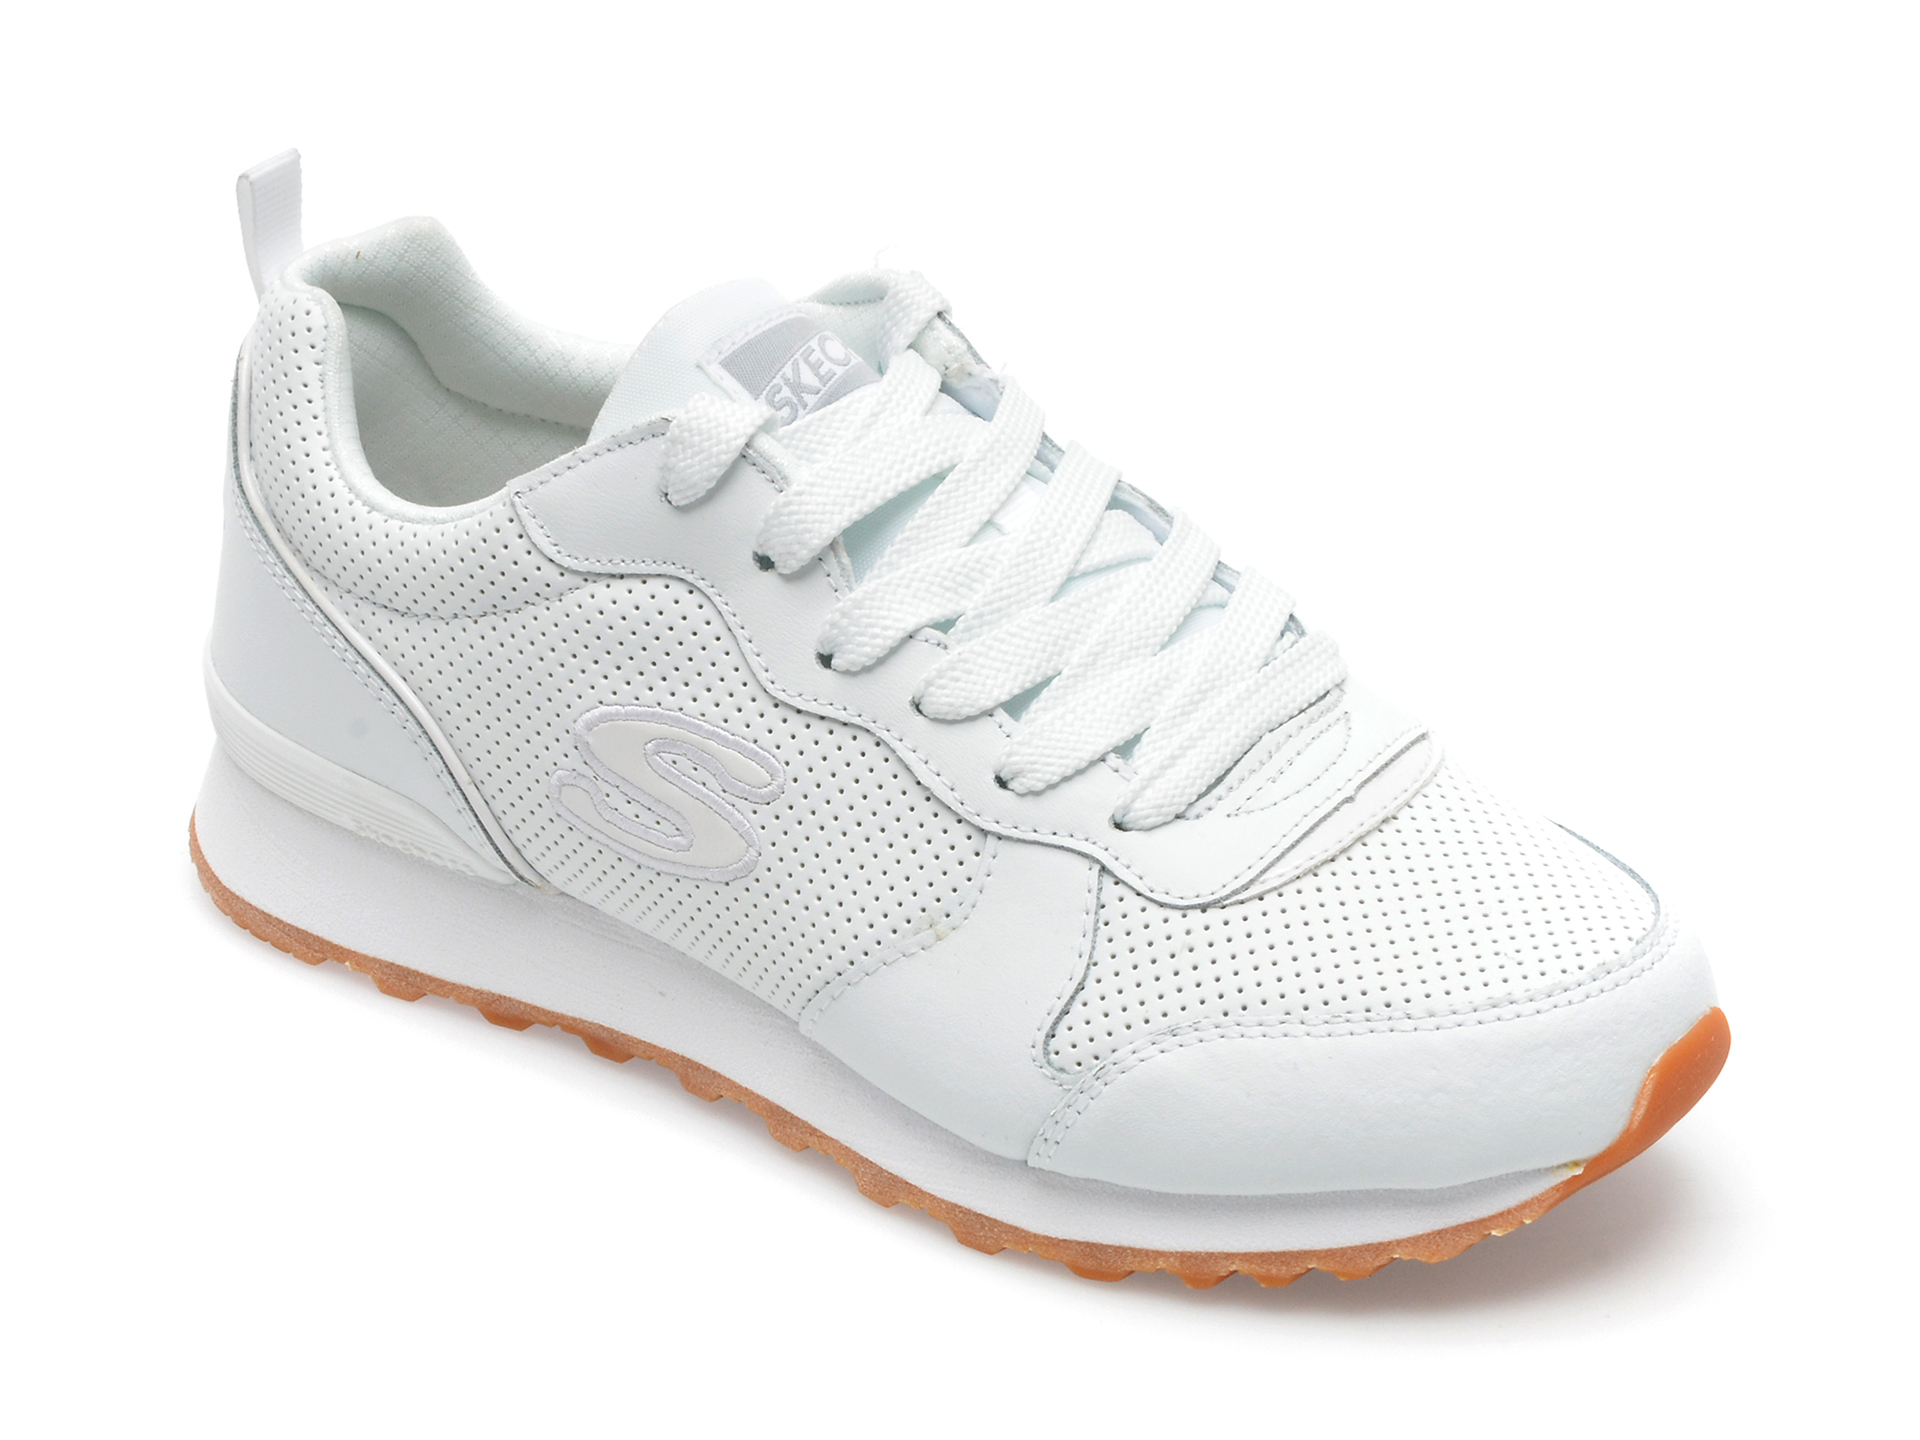 Pantofi sport SKECHERS albi, OG 85, din piele naturala si piele ecologica /femei/pantofi Femei